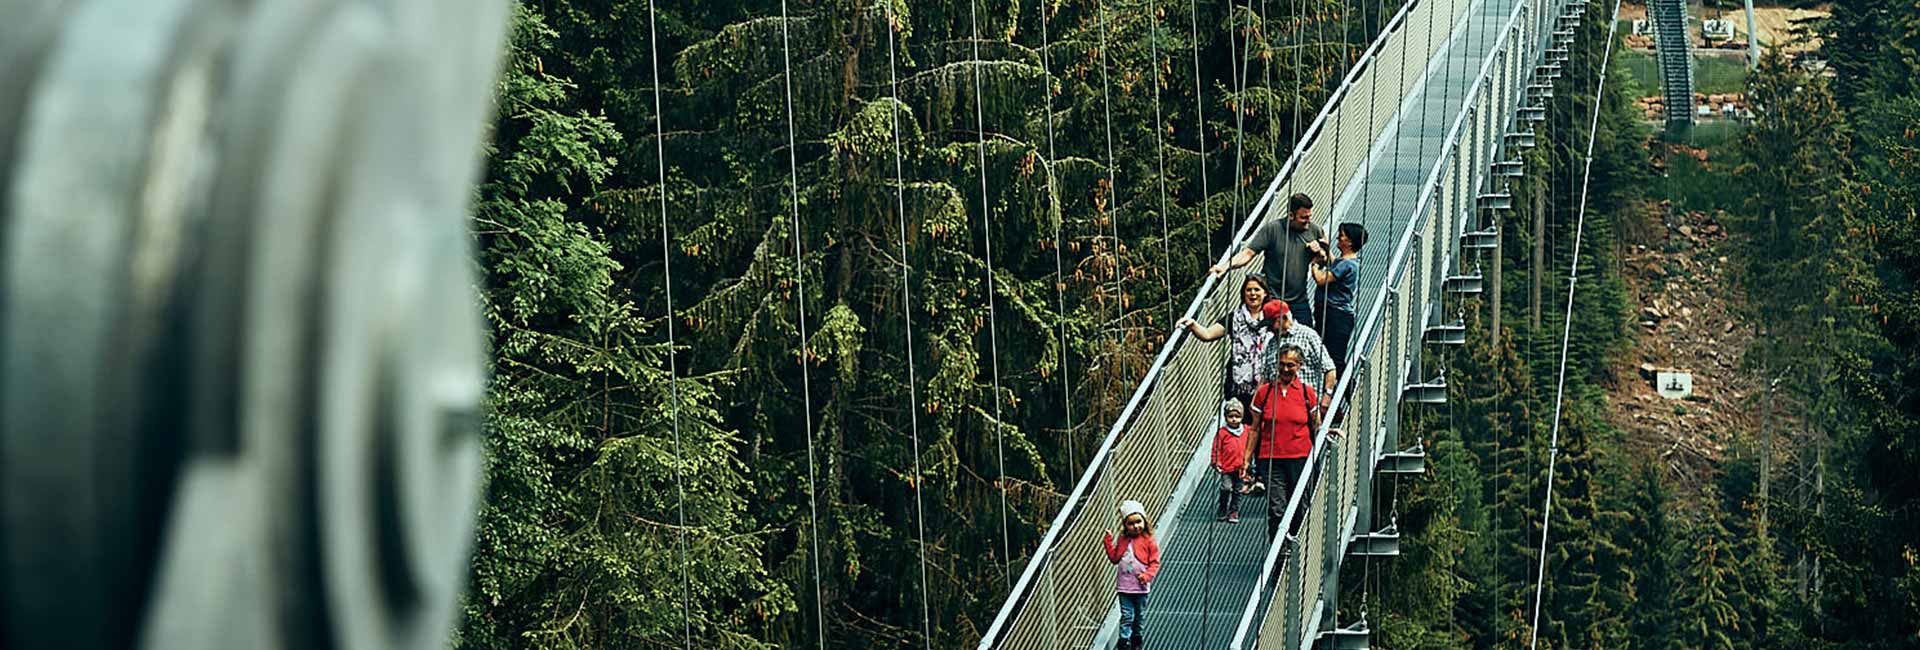 Visitors cross the WILDLINE suspension bridge